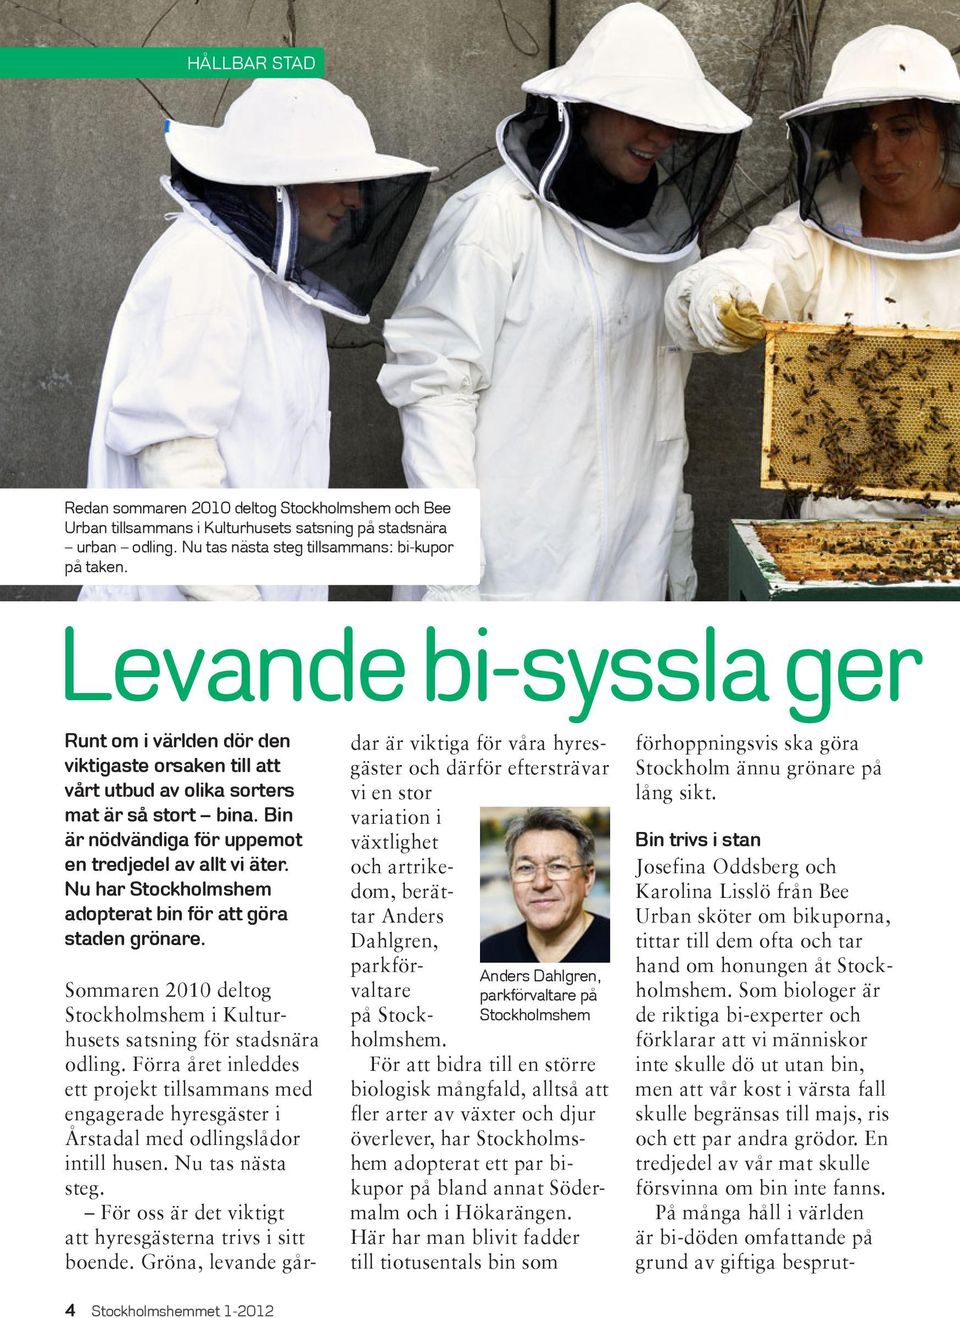 Nu har Stockholmshem adopterat bin för att göra staden grönare. Sommaren 2010 deltog Stockholmshem i Kulturhusets satsning för stadsnära odling.